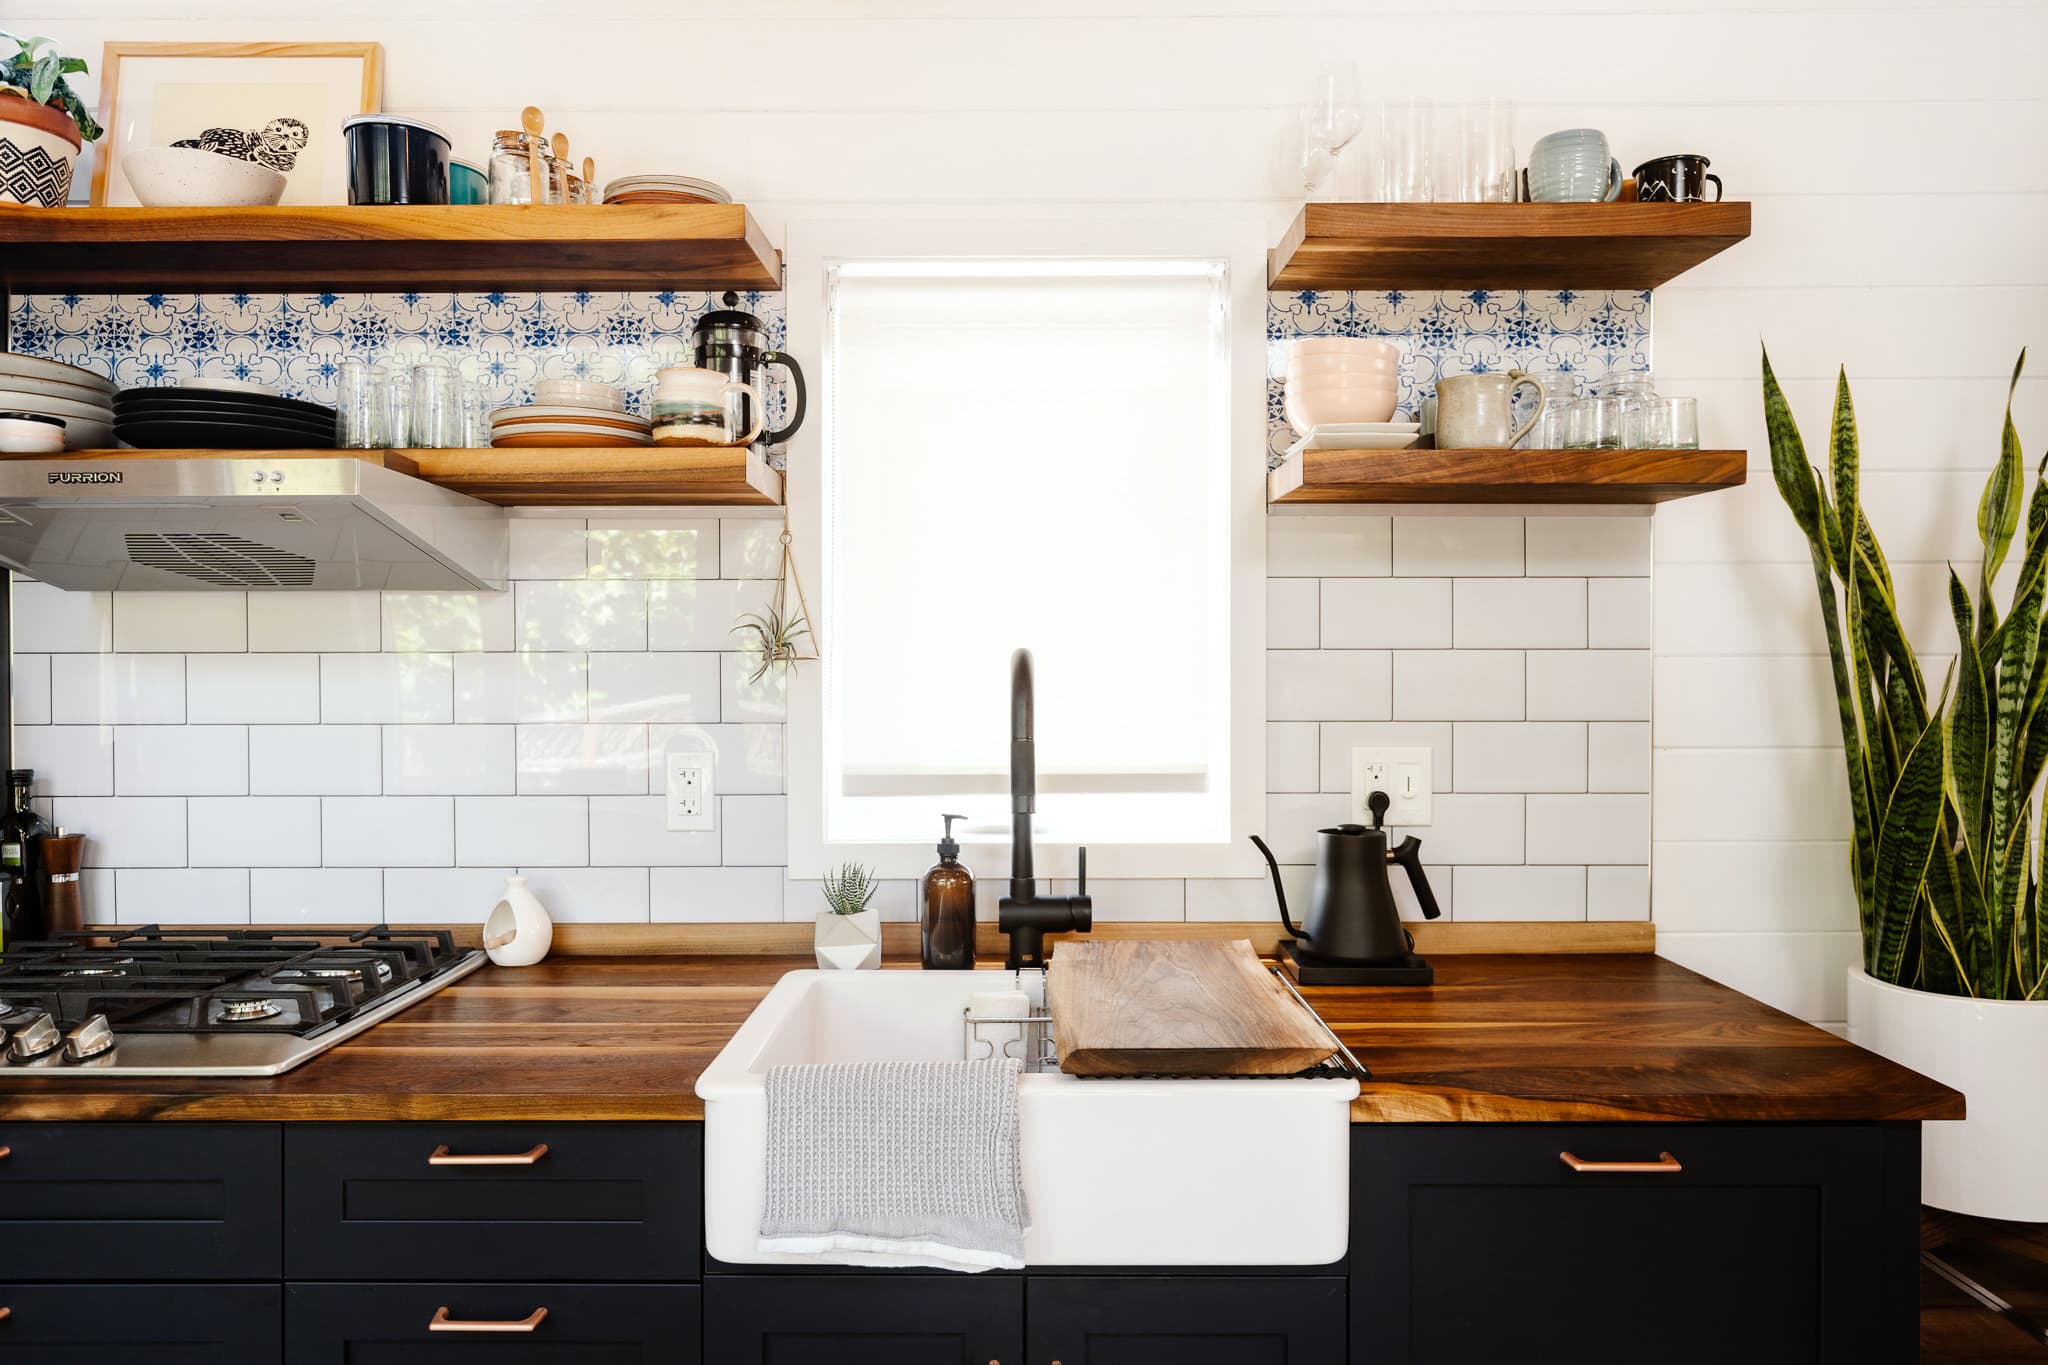 8 Best Small Kitchen Storage & Design Ideas  Kitchn